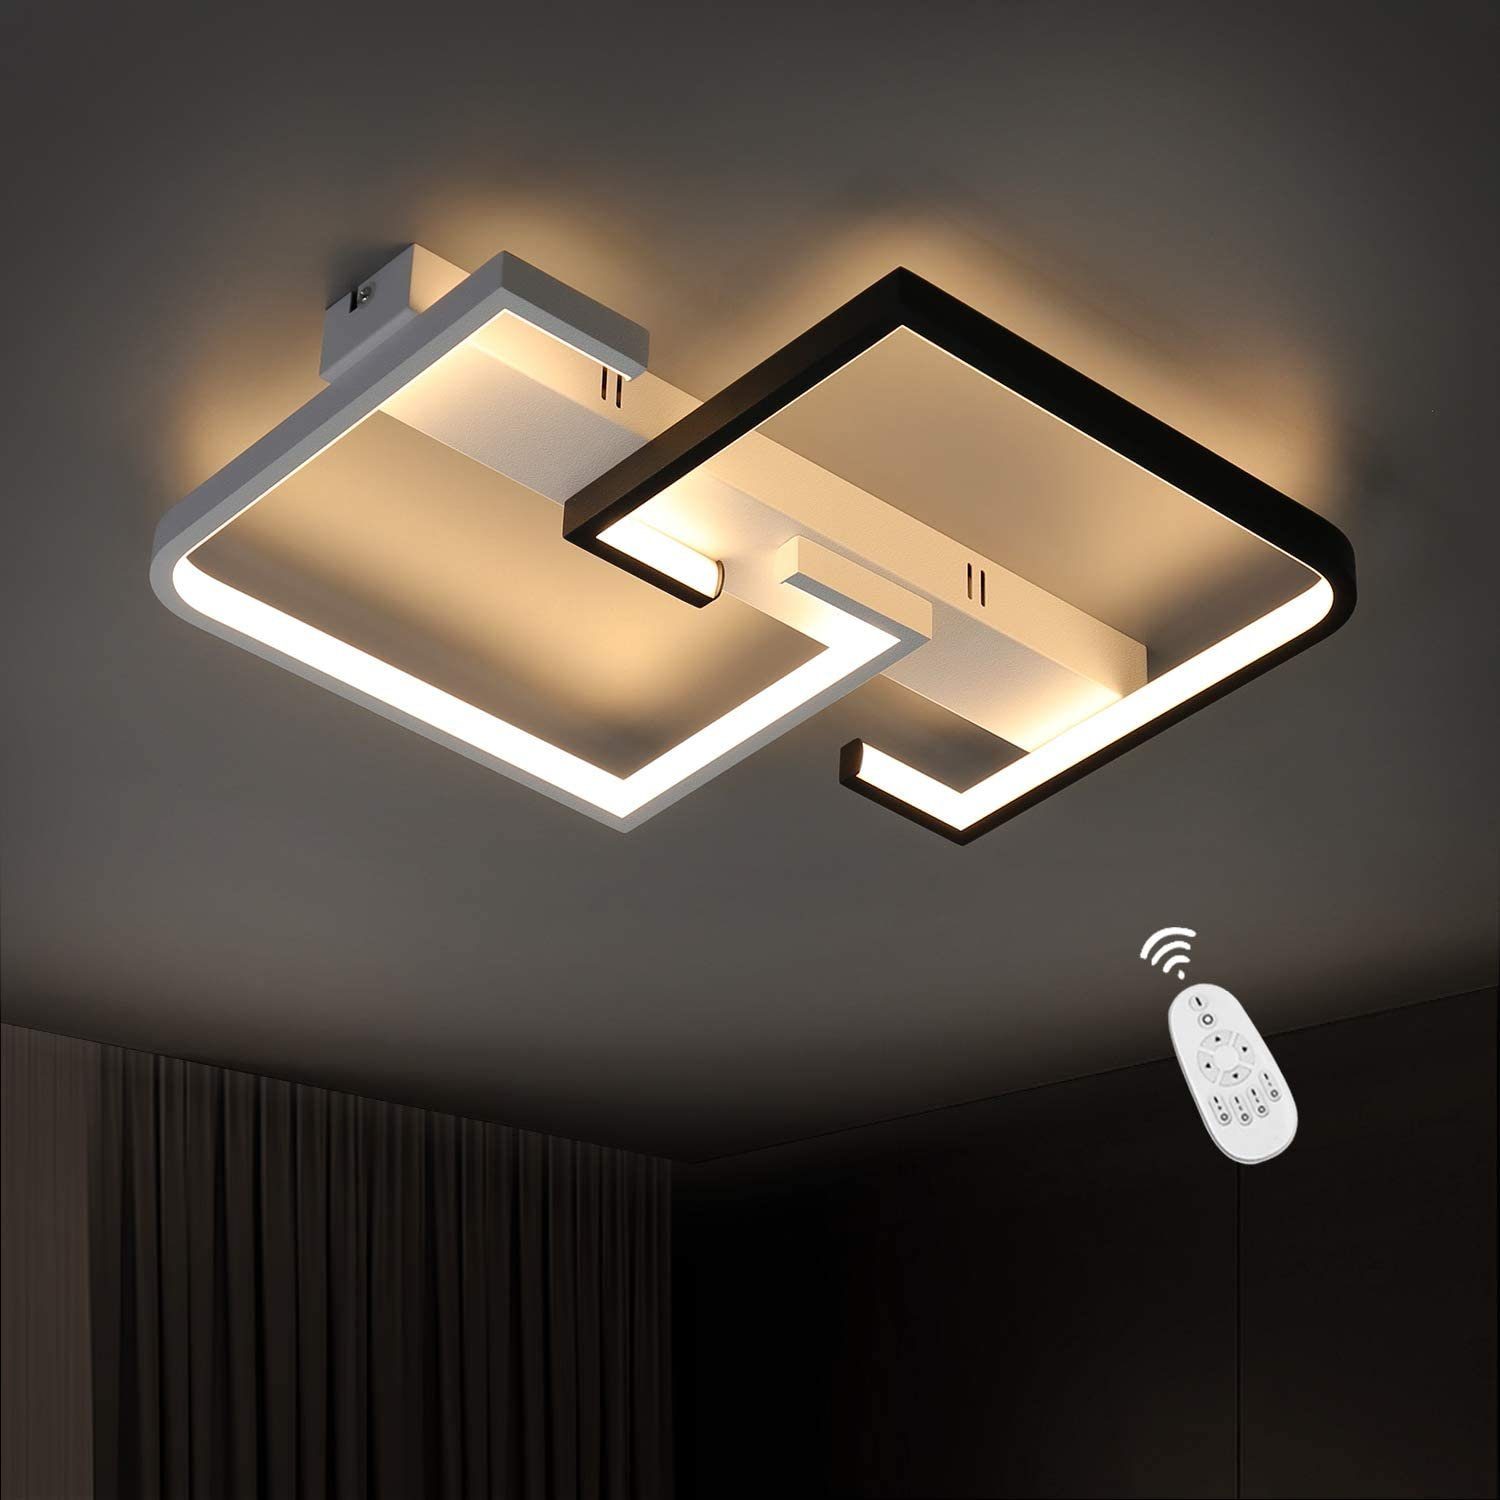 ZMH LED Deckenleuchte »Deckenlampe dimmbar mit Fernbedienung 35W für  Schlafzimmer Küche Wohnzimmer« online kaufen | OTTO